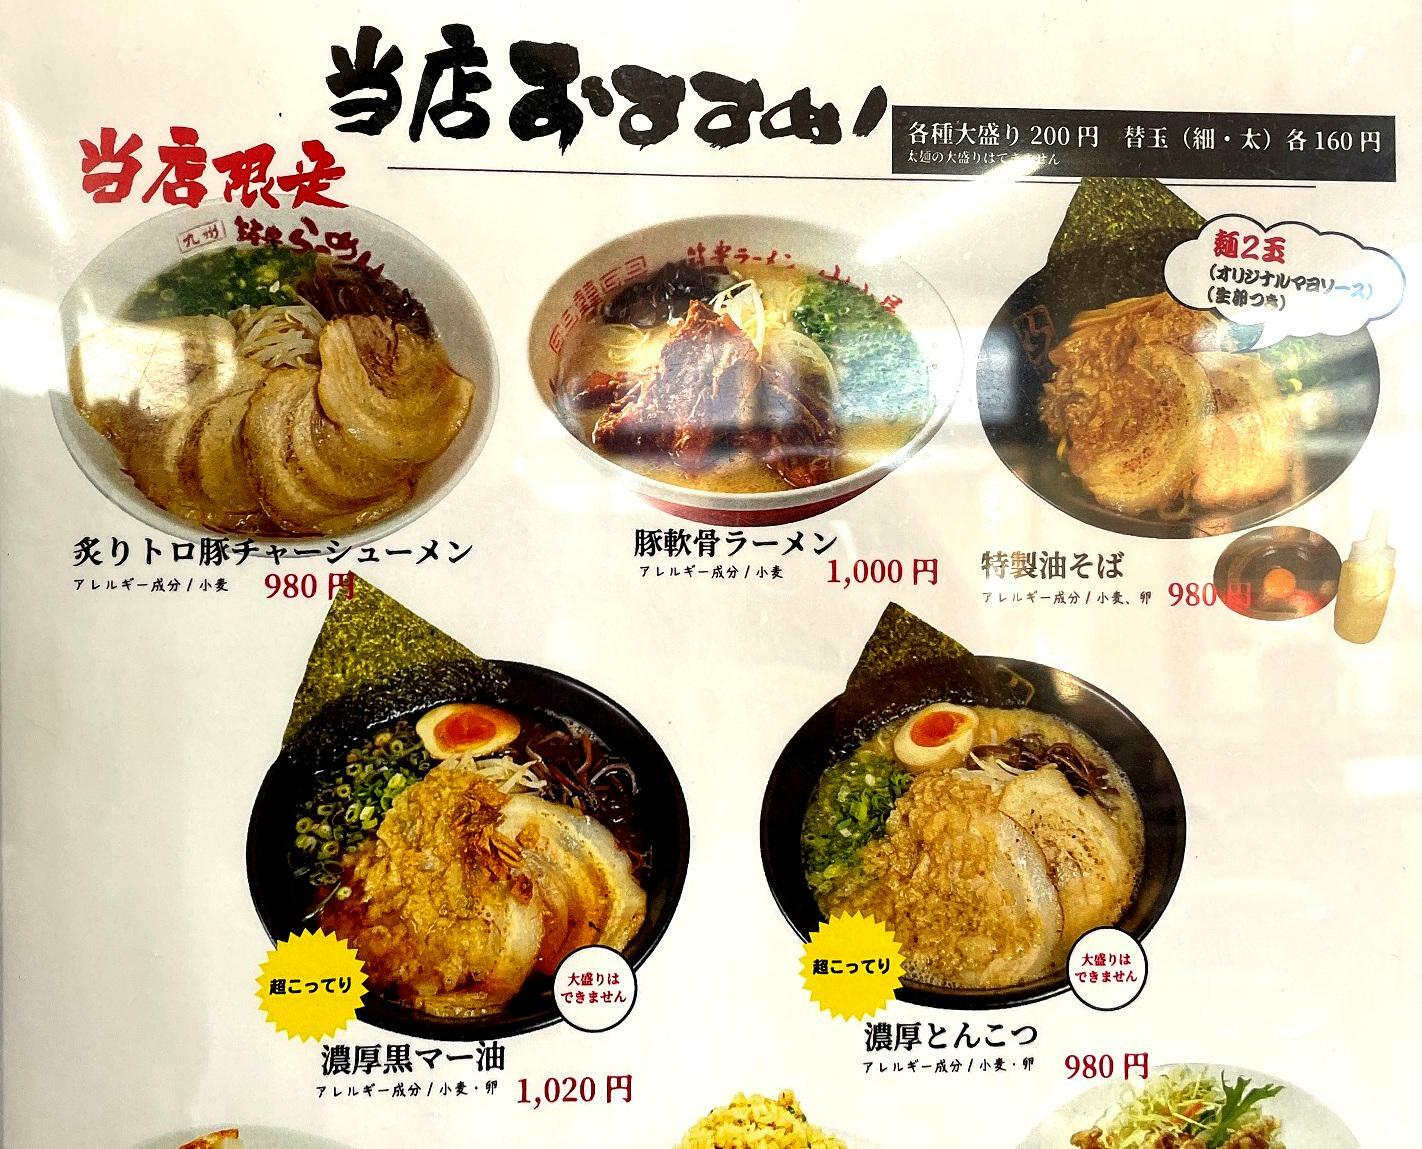 炙りトロ豚チャーシュー麺（980円）が目に入りました。